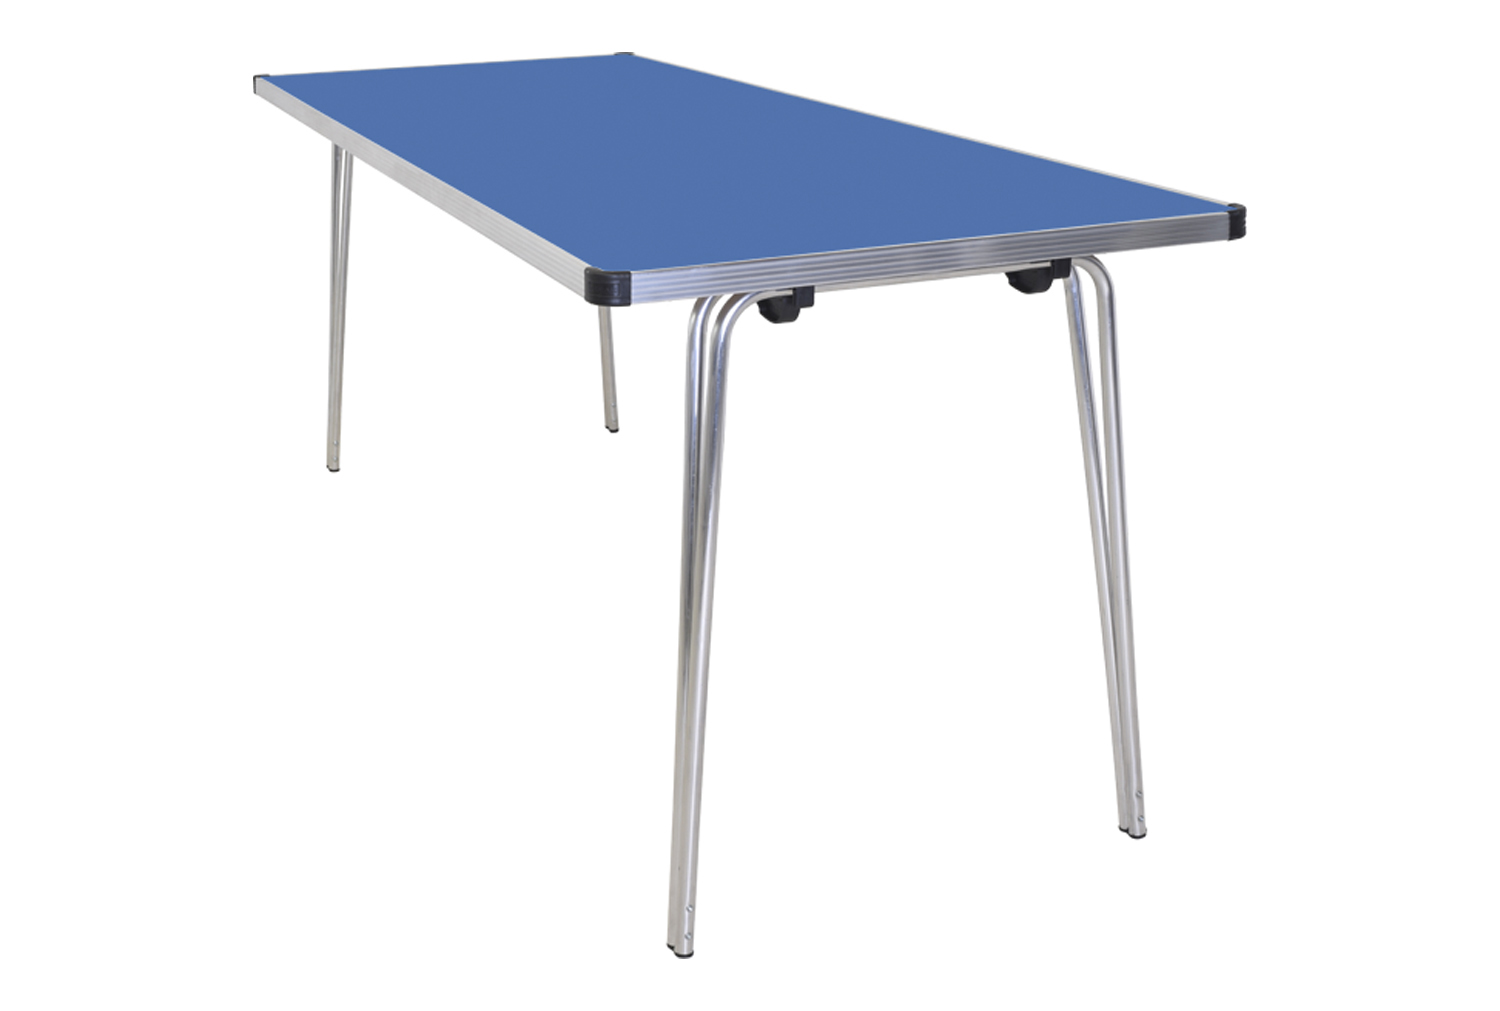 Gopak Contour Folding Table, 183wx76d (cm), Azure Blue